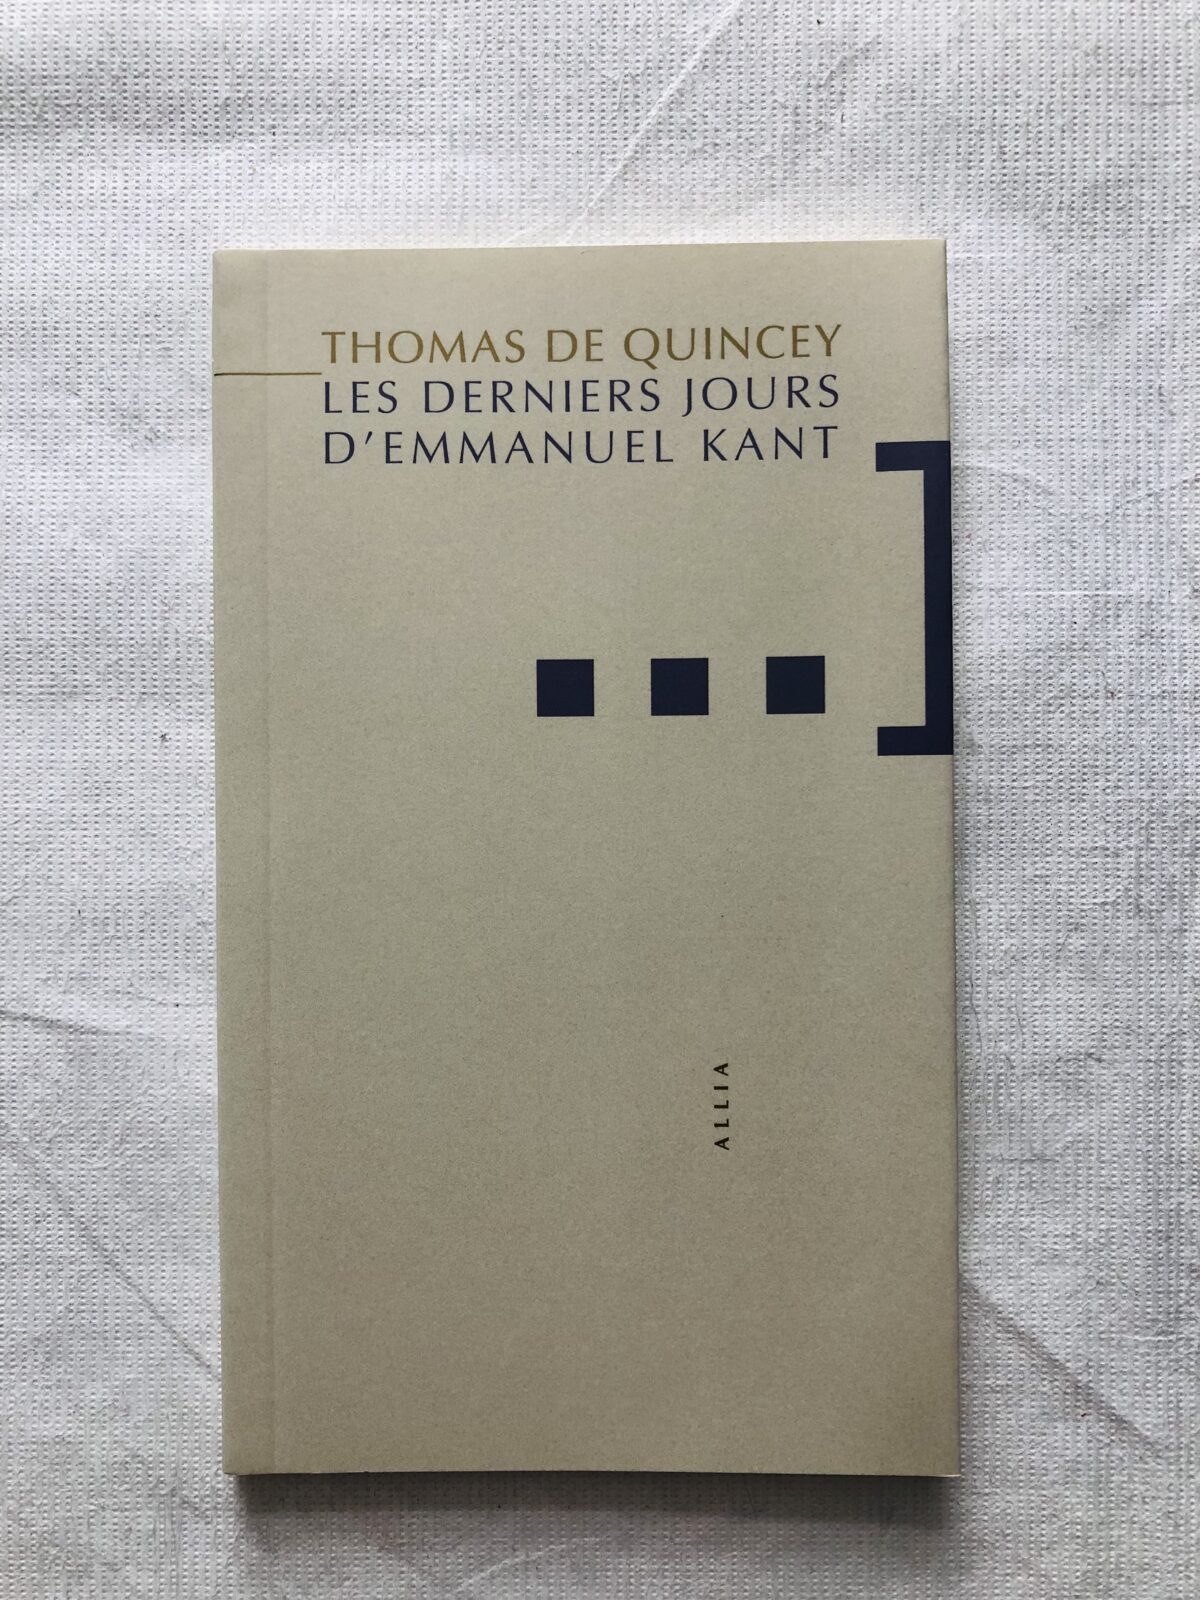 Ouvrage sélectionné: Les Derniers Jours d'Emmanuel Kant, de Thomas de Quincey.